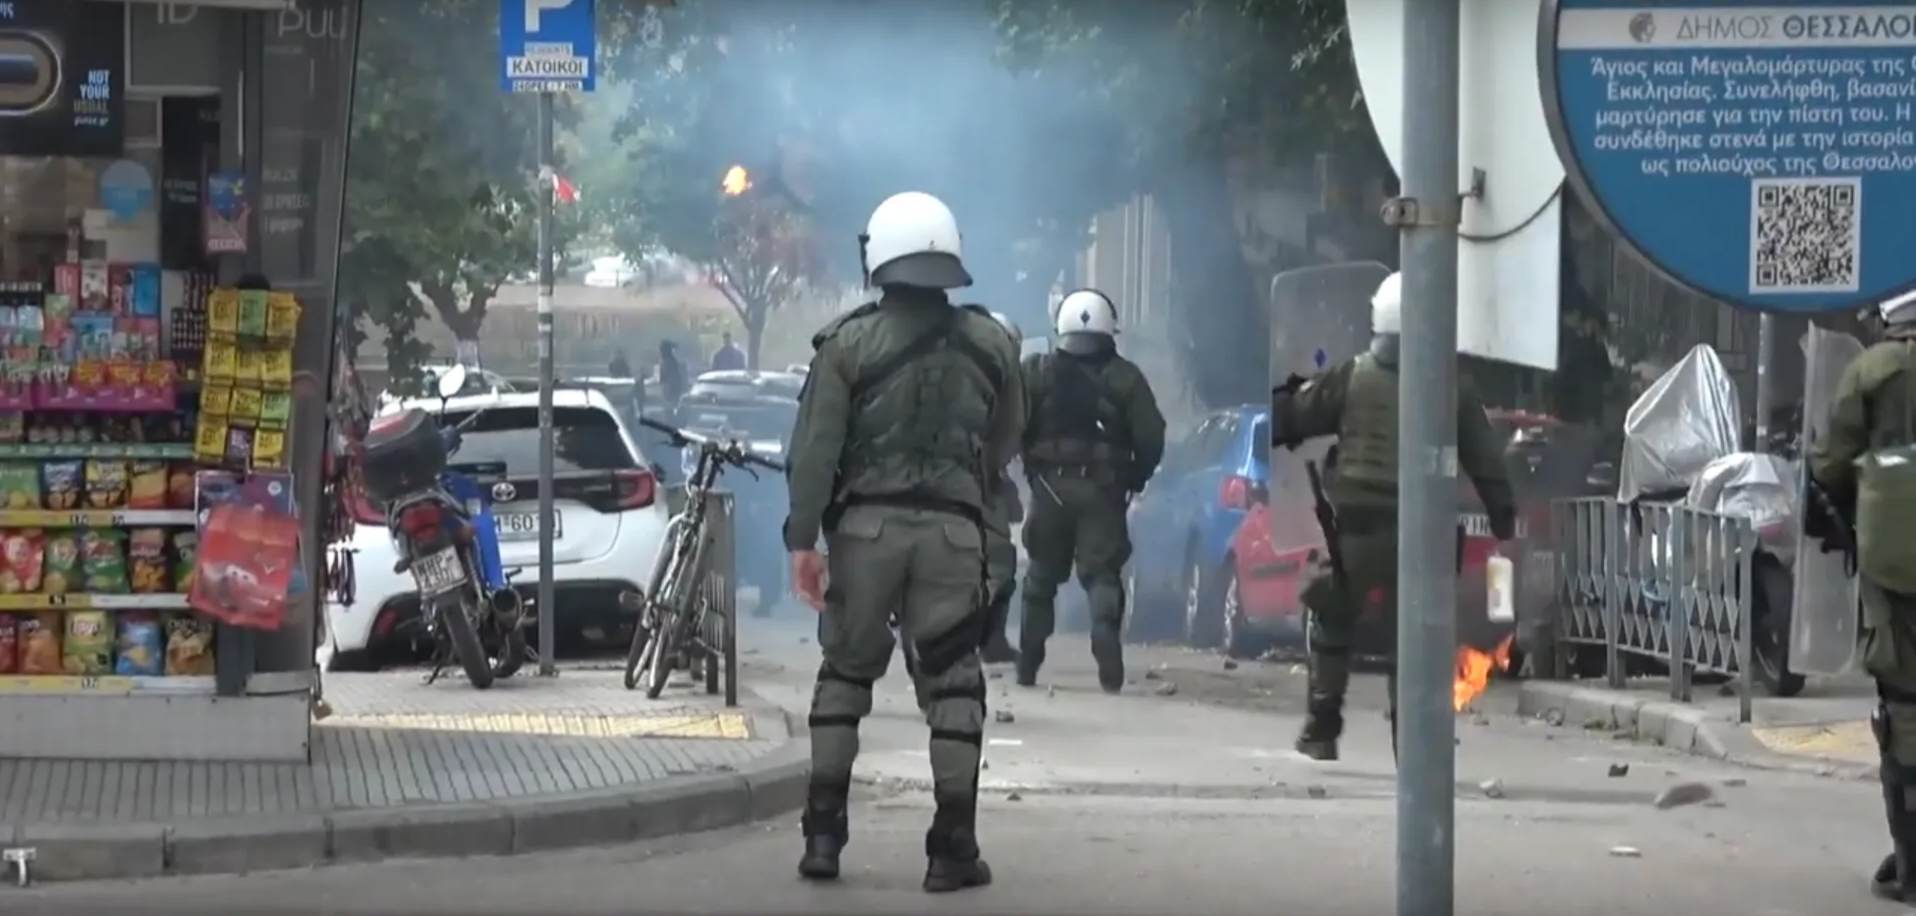 Απεργιακή πορεία & συγκρούσεις μετά την πορεία | Θεσσαλονίκη 9-11-2022